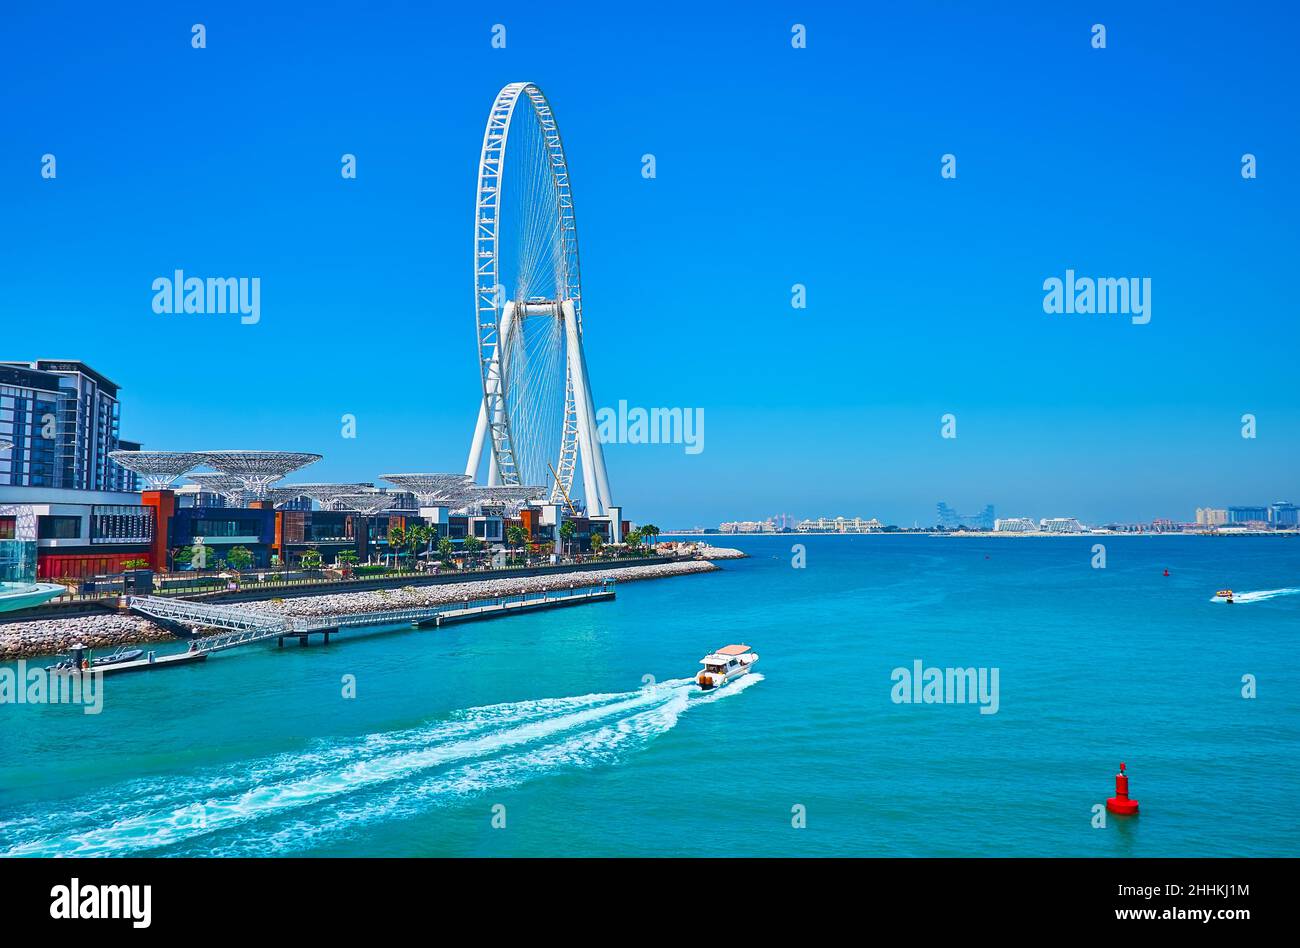 La côte de l'île Bluewaters avec la roue moderne Ain Dubai Ferris et les bateaux, flottant de Marina, Dubaï, eau Banque D'Images